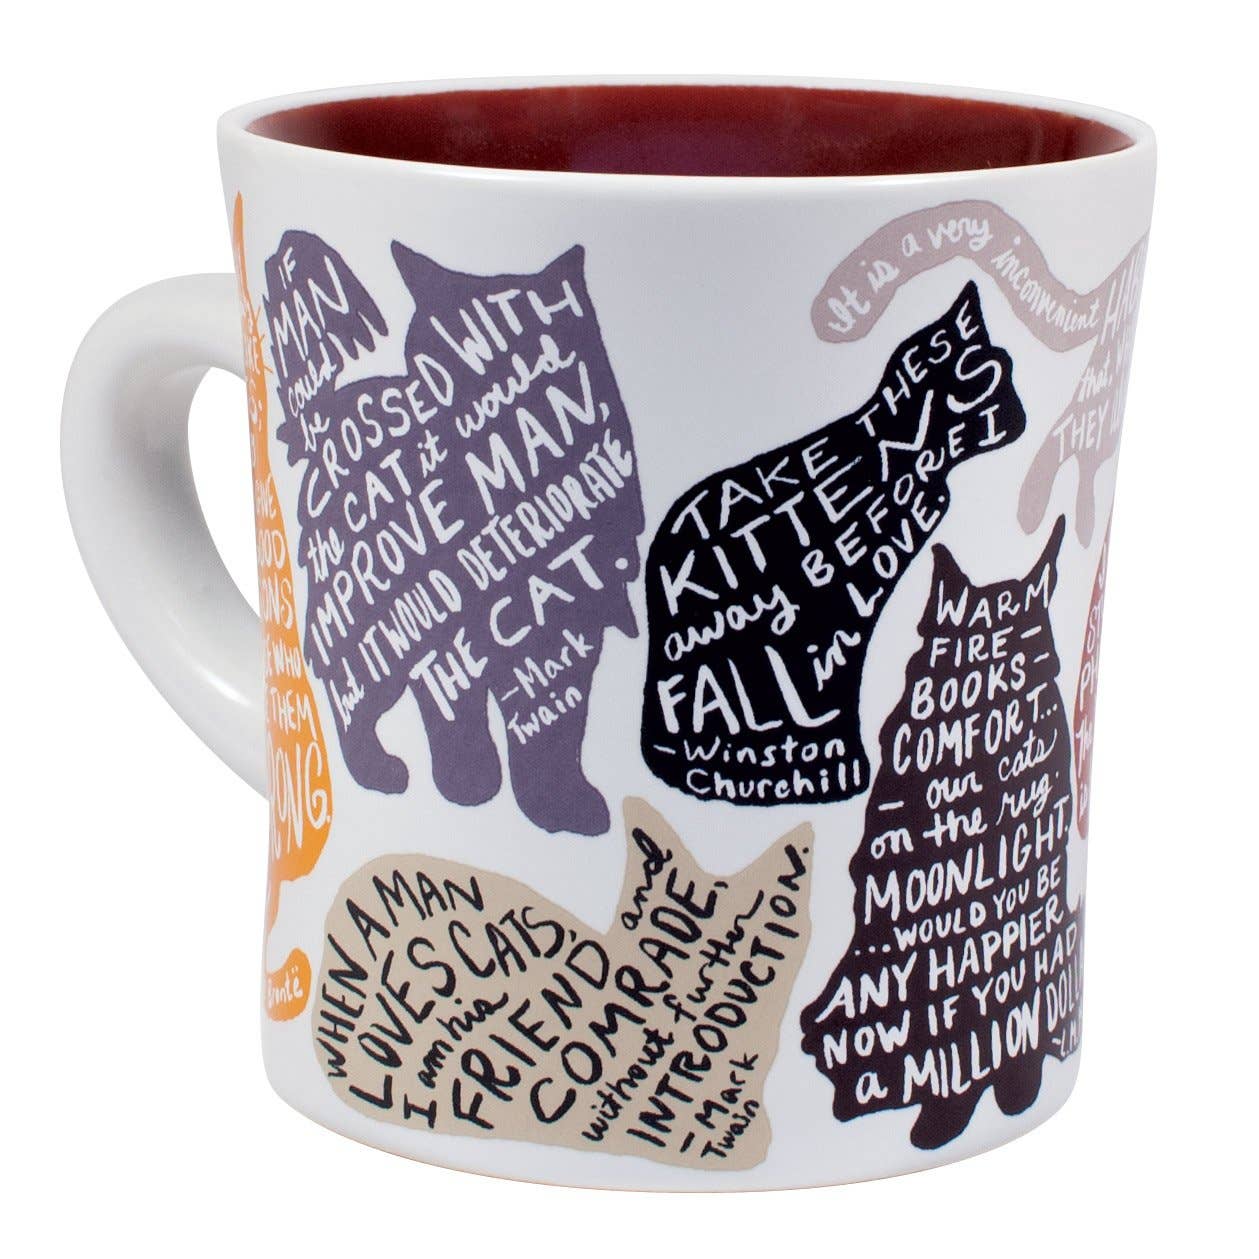 Literature Cat Quotes Coffee Mug